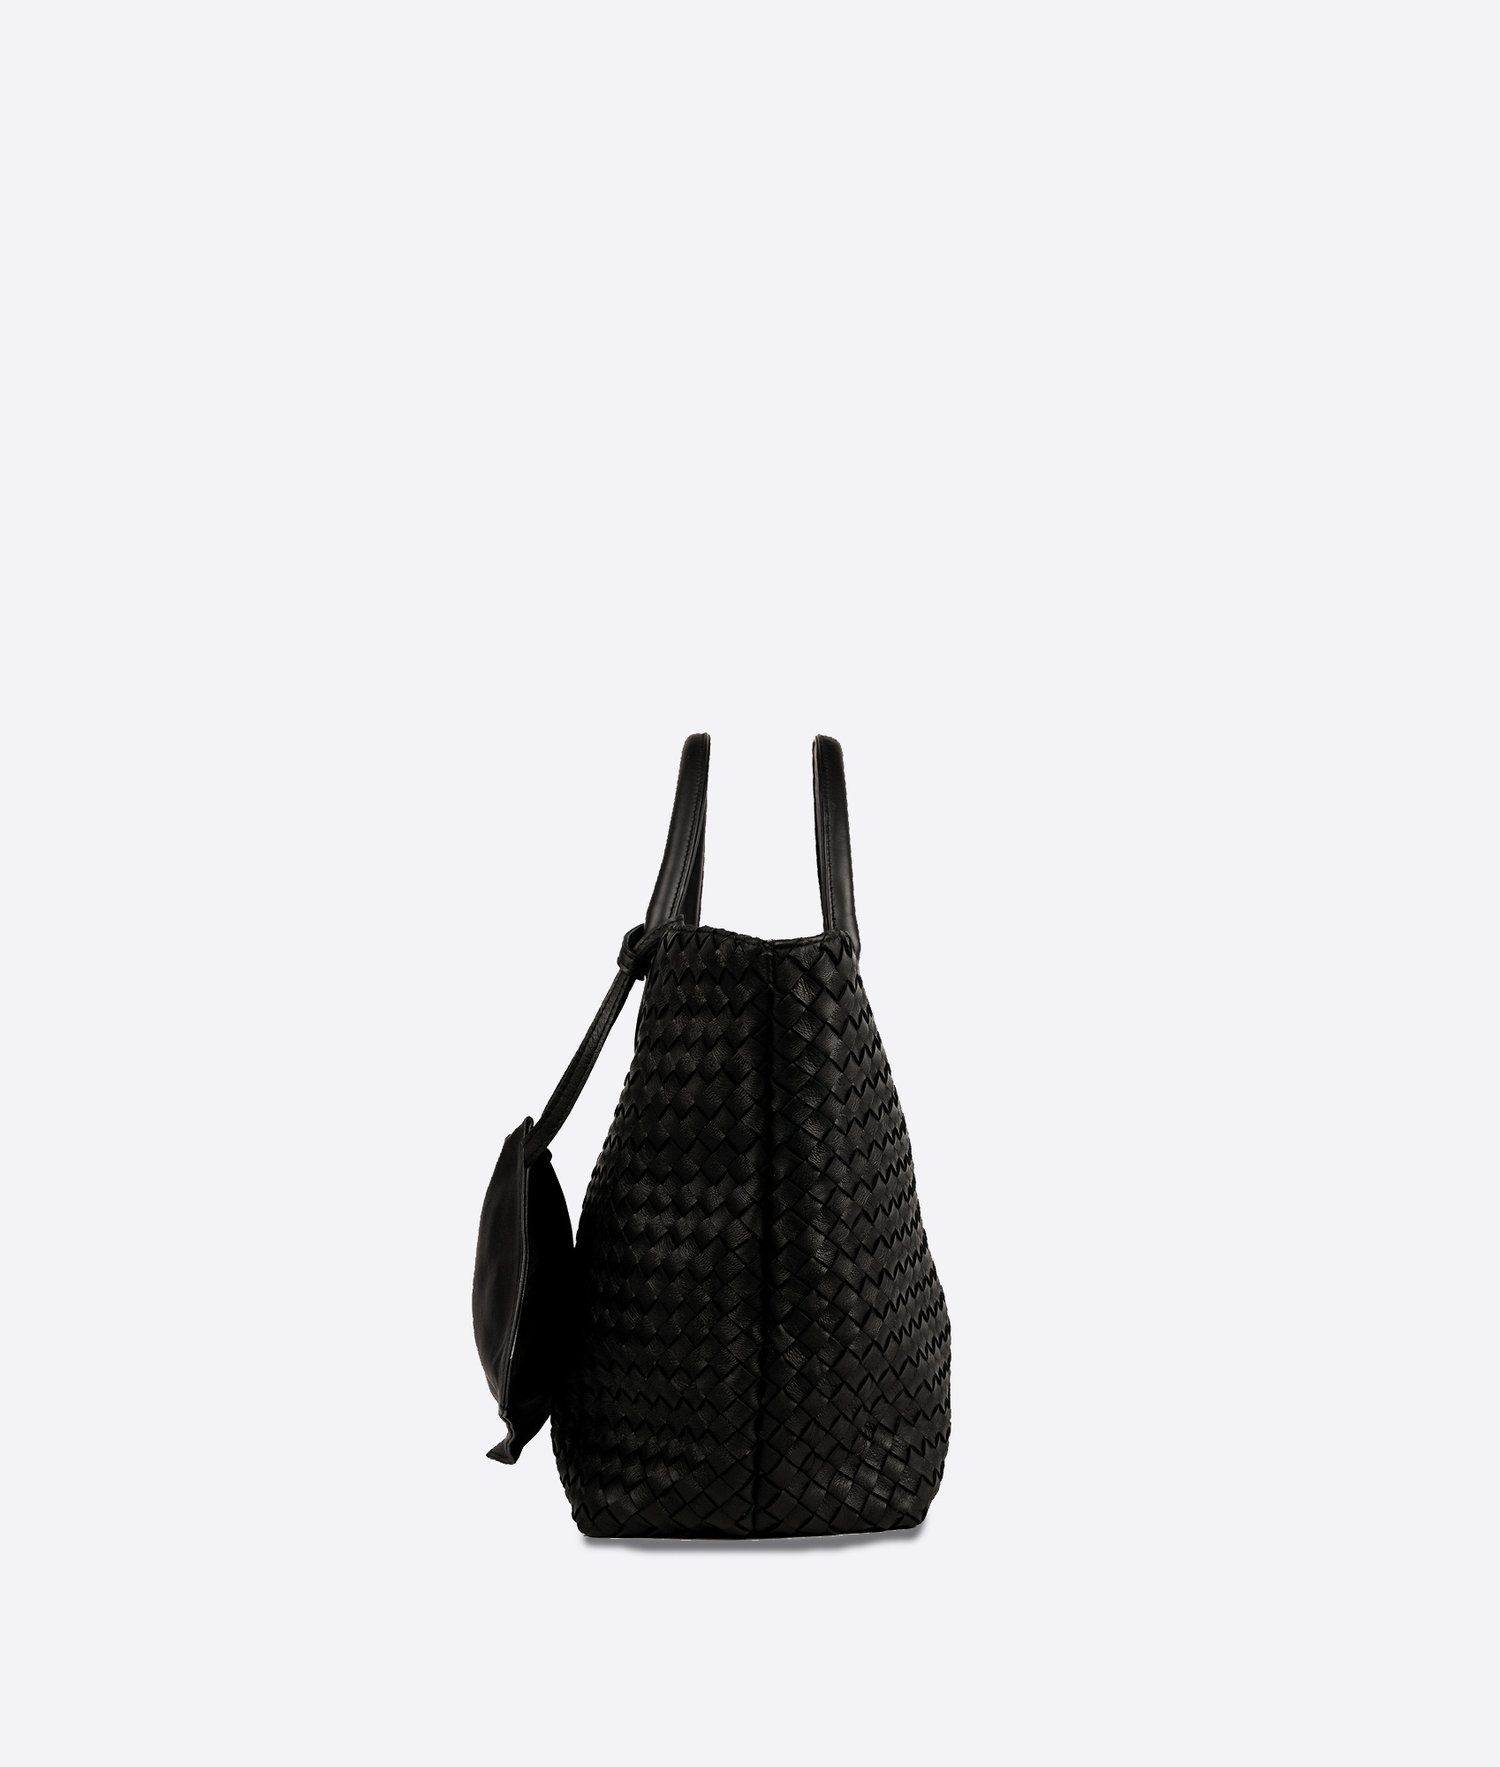 Maya - Hand-woven bucket bag in black — Kmana